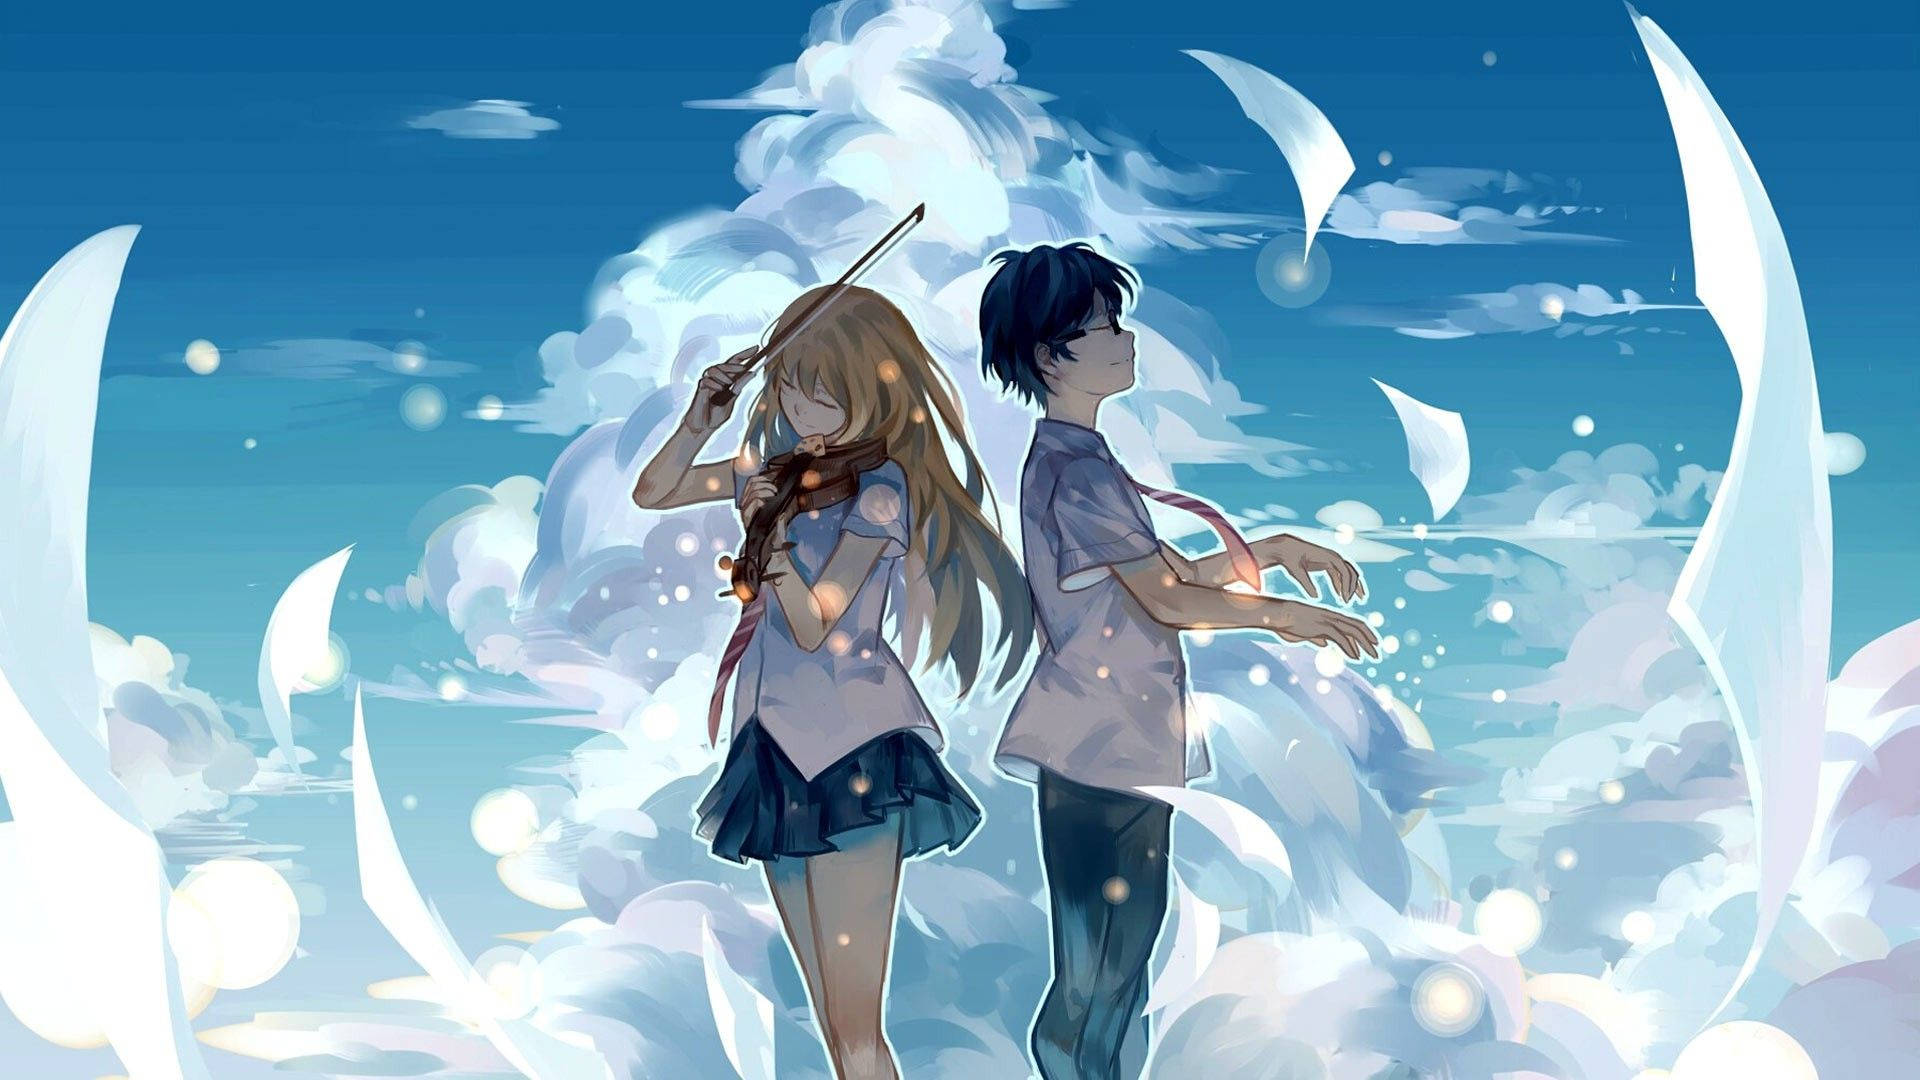 Anime Love Kousei & Kaori Background